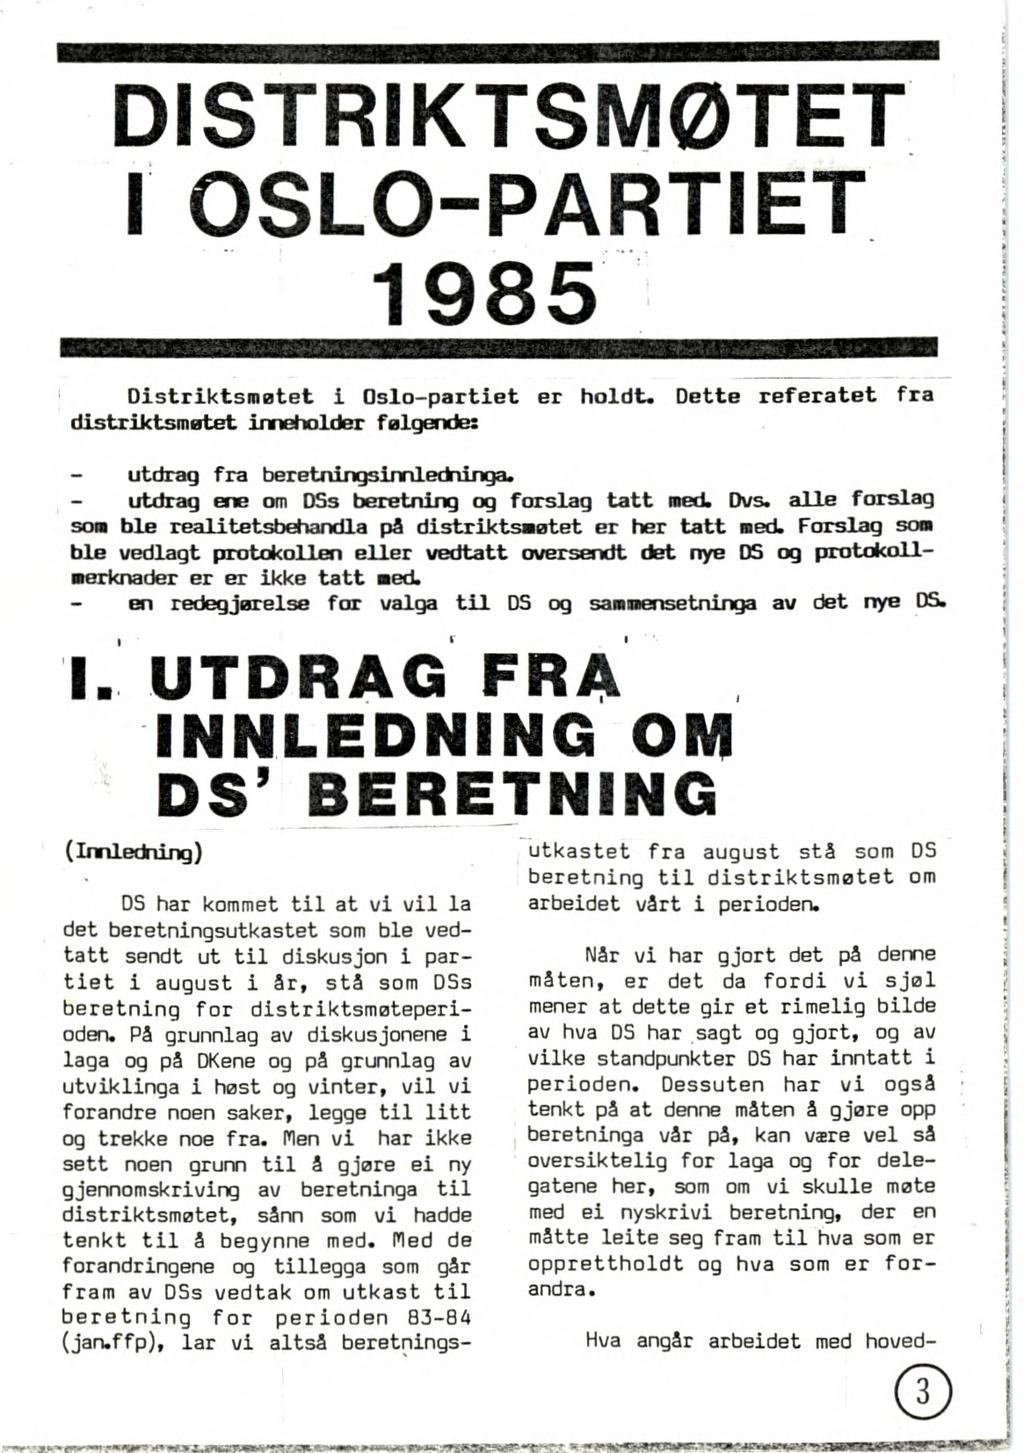 ETIMIME132"` rriktsmøtet SLO-PARTIET 1985 Distriktsmøtet i Oslo-partiet er holdt. Dette referatet fra distriktsmøtet inneholder følgende: utdrag fra beretningsinnledninga.